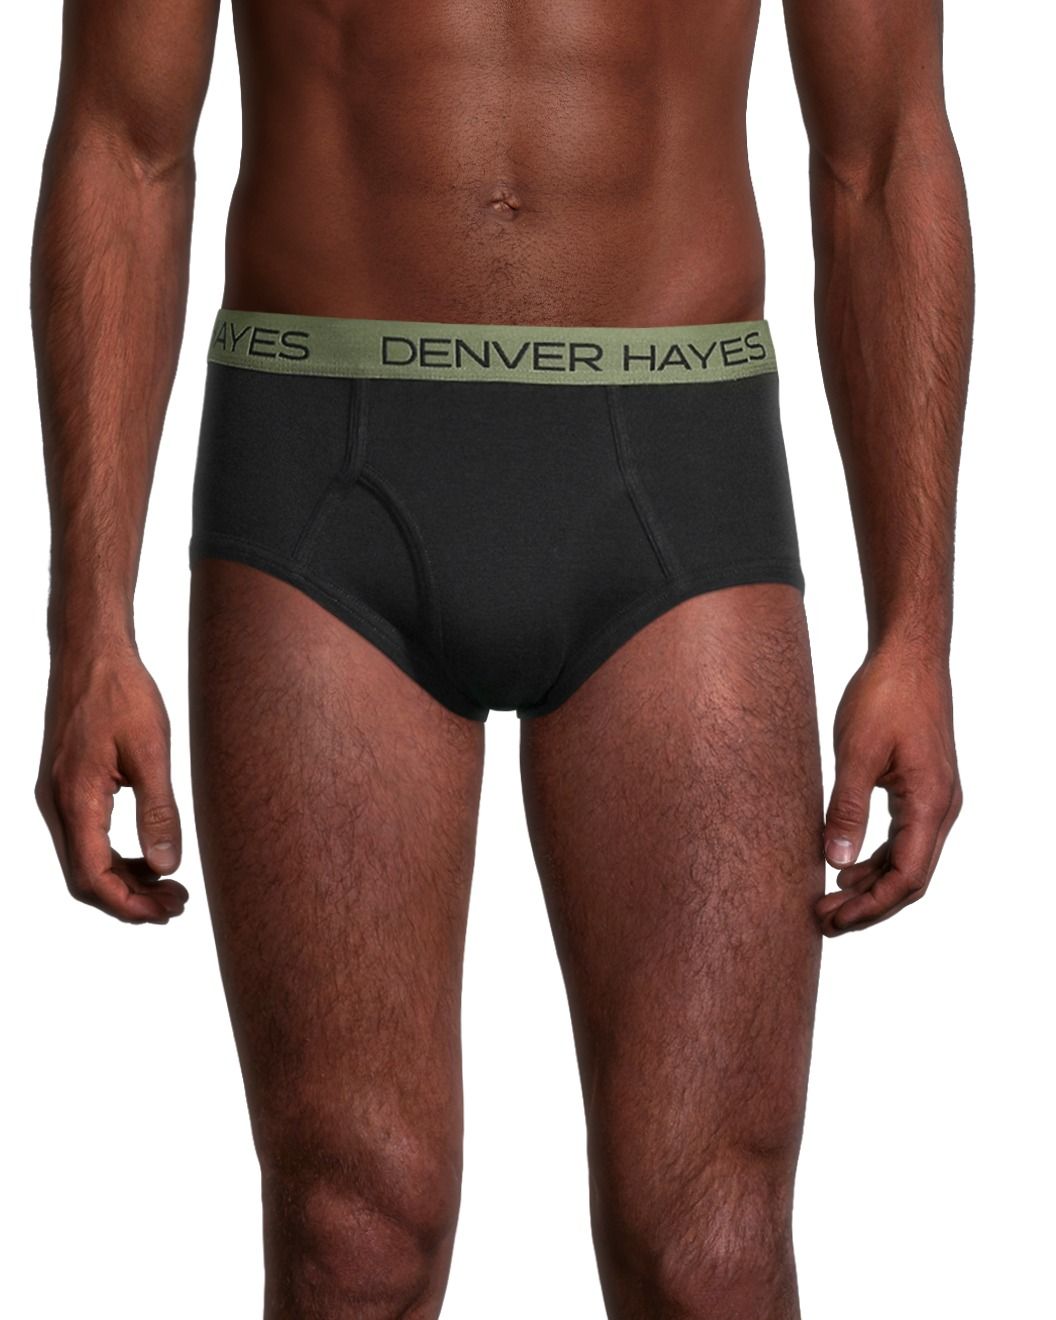 Denver Hayes Women's 3 Pack Cotton Stretch Brief Underwear